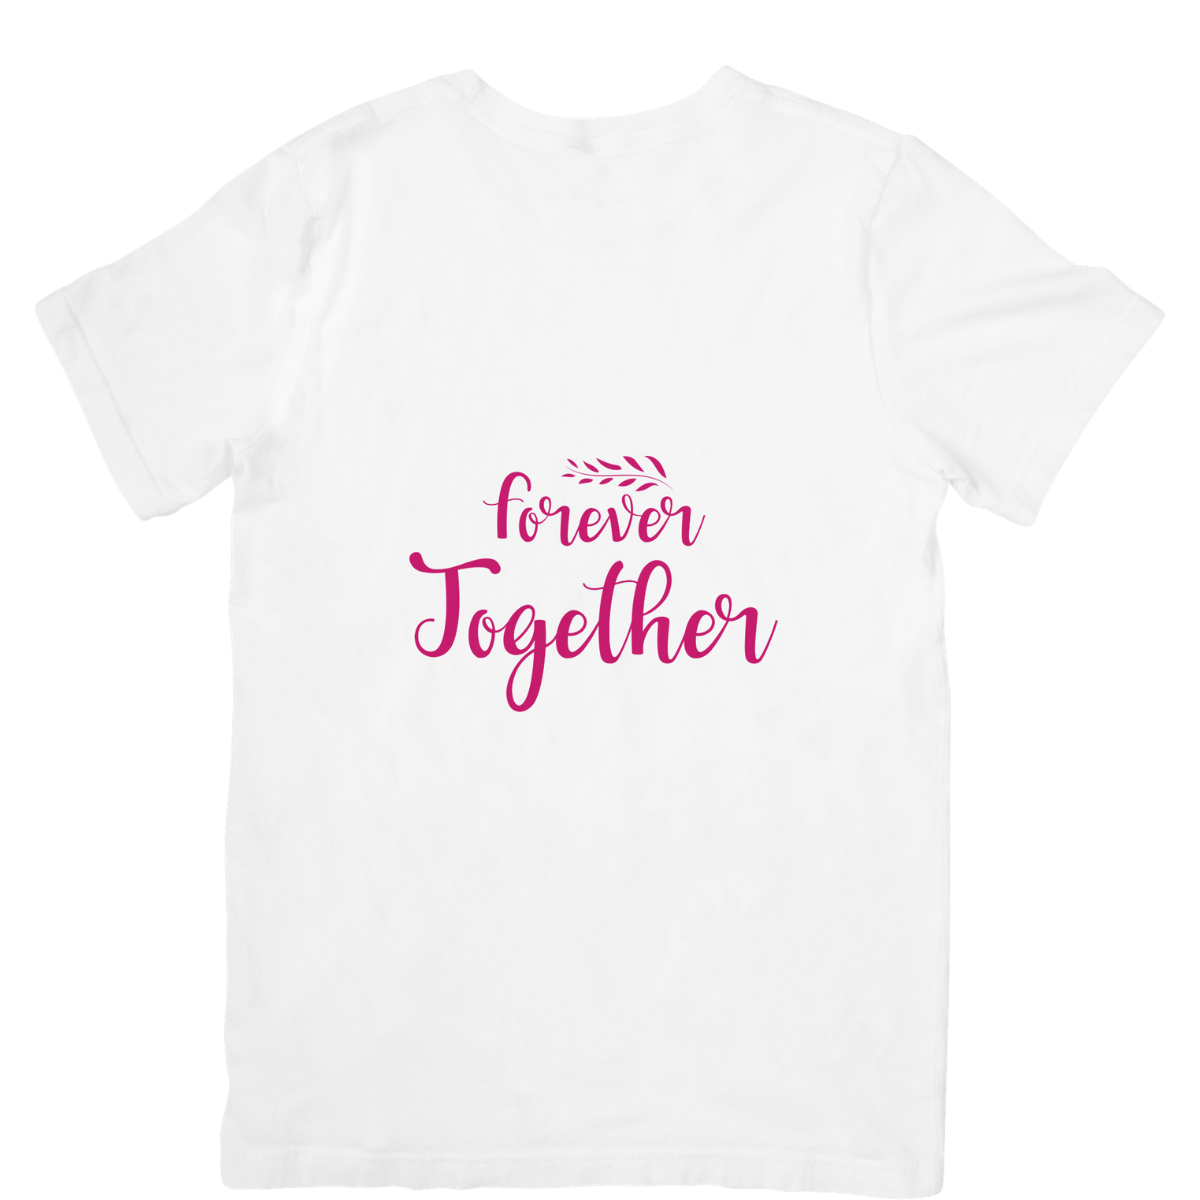 Forever Together SVG | Digital Download | Cut File | SVG Only The Sweet Stuff